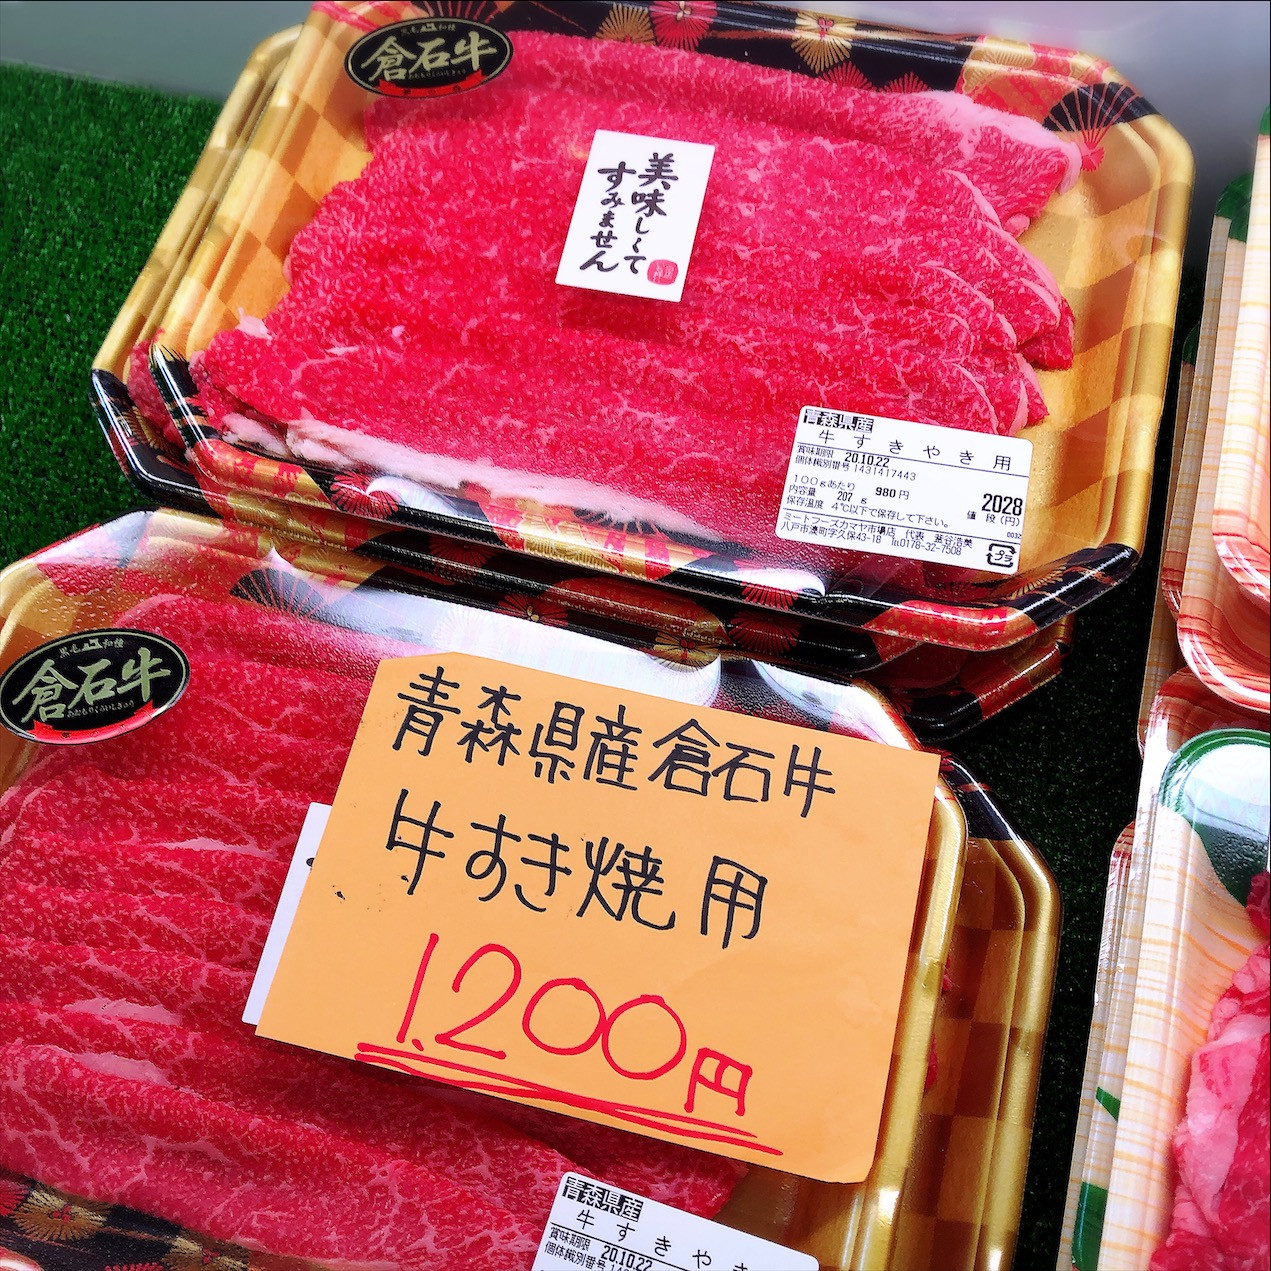 本日は青森県産倉石牛すき焼き、カルビがお買得です。